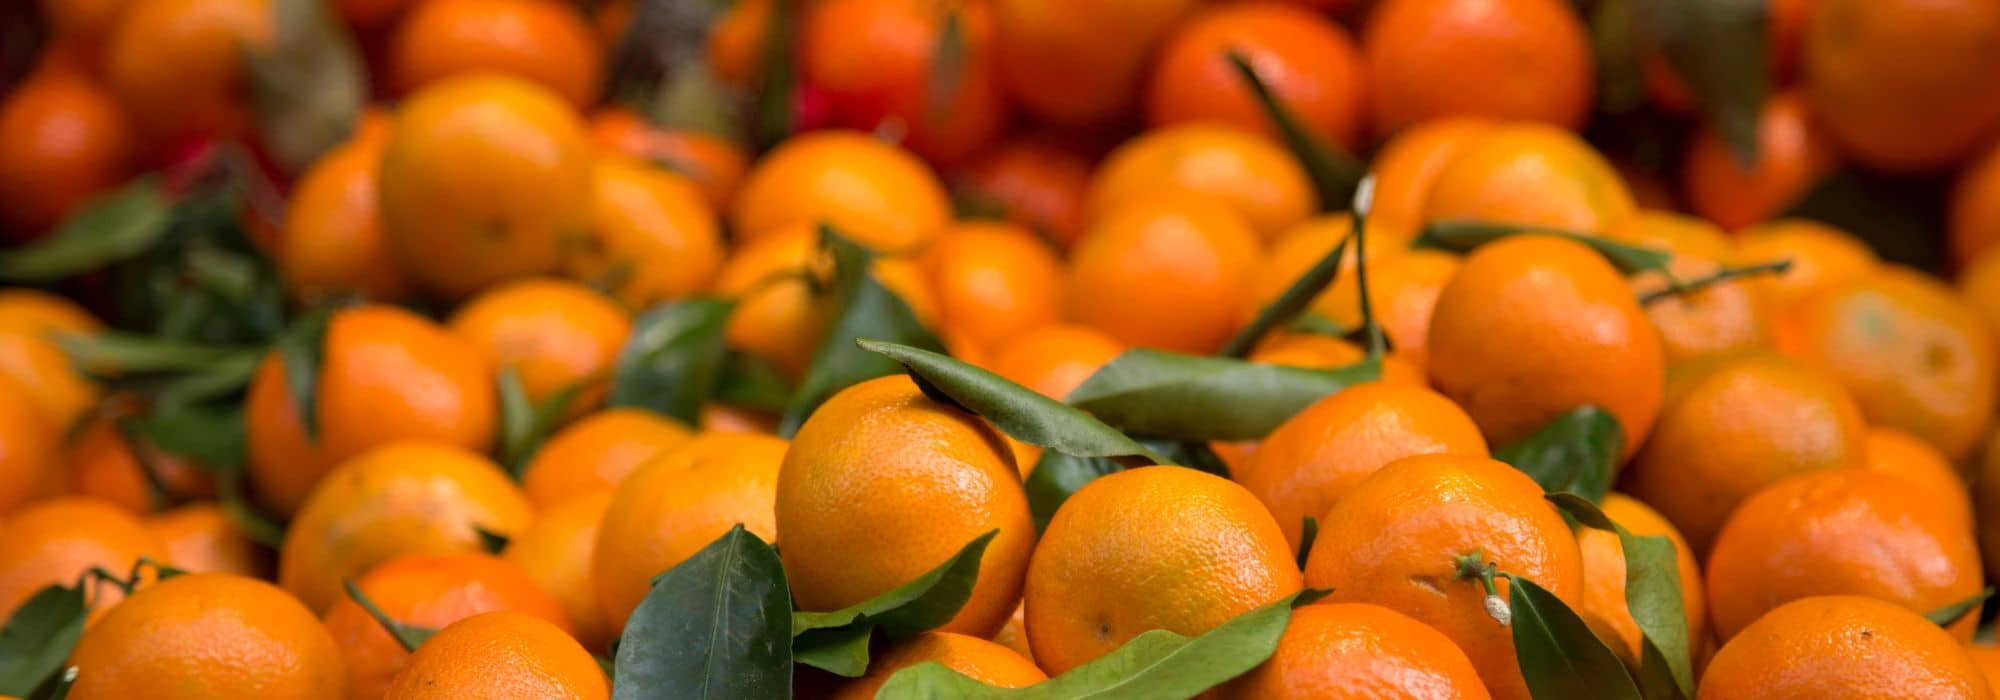 Quelles différences entre mandarine et clémentine ?